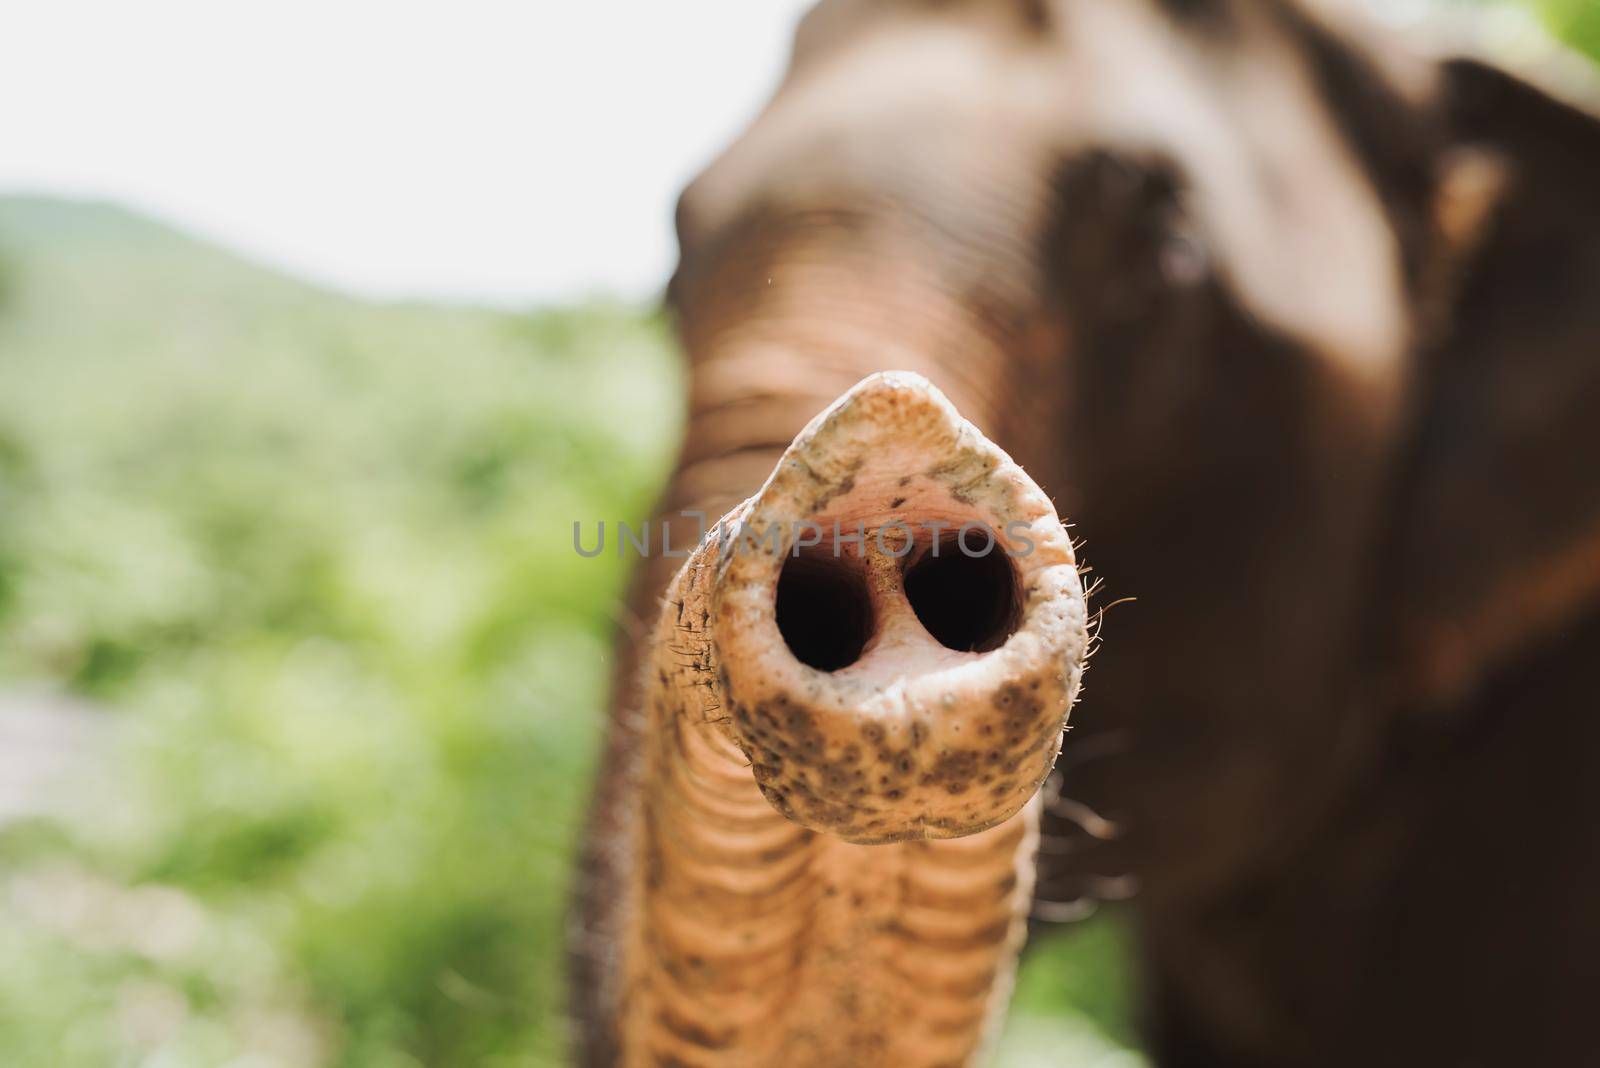 Elephants trunk close shot by Wmpix